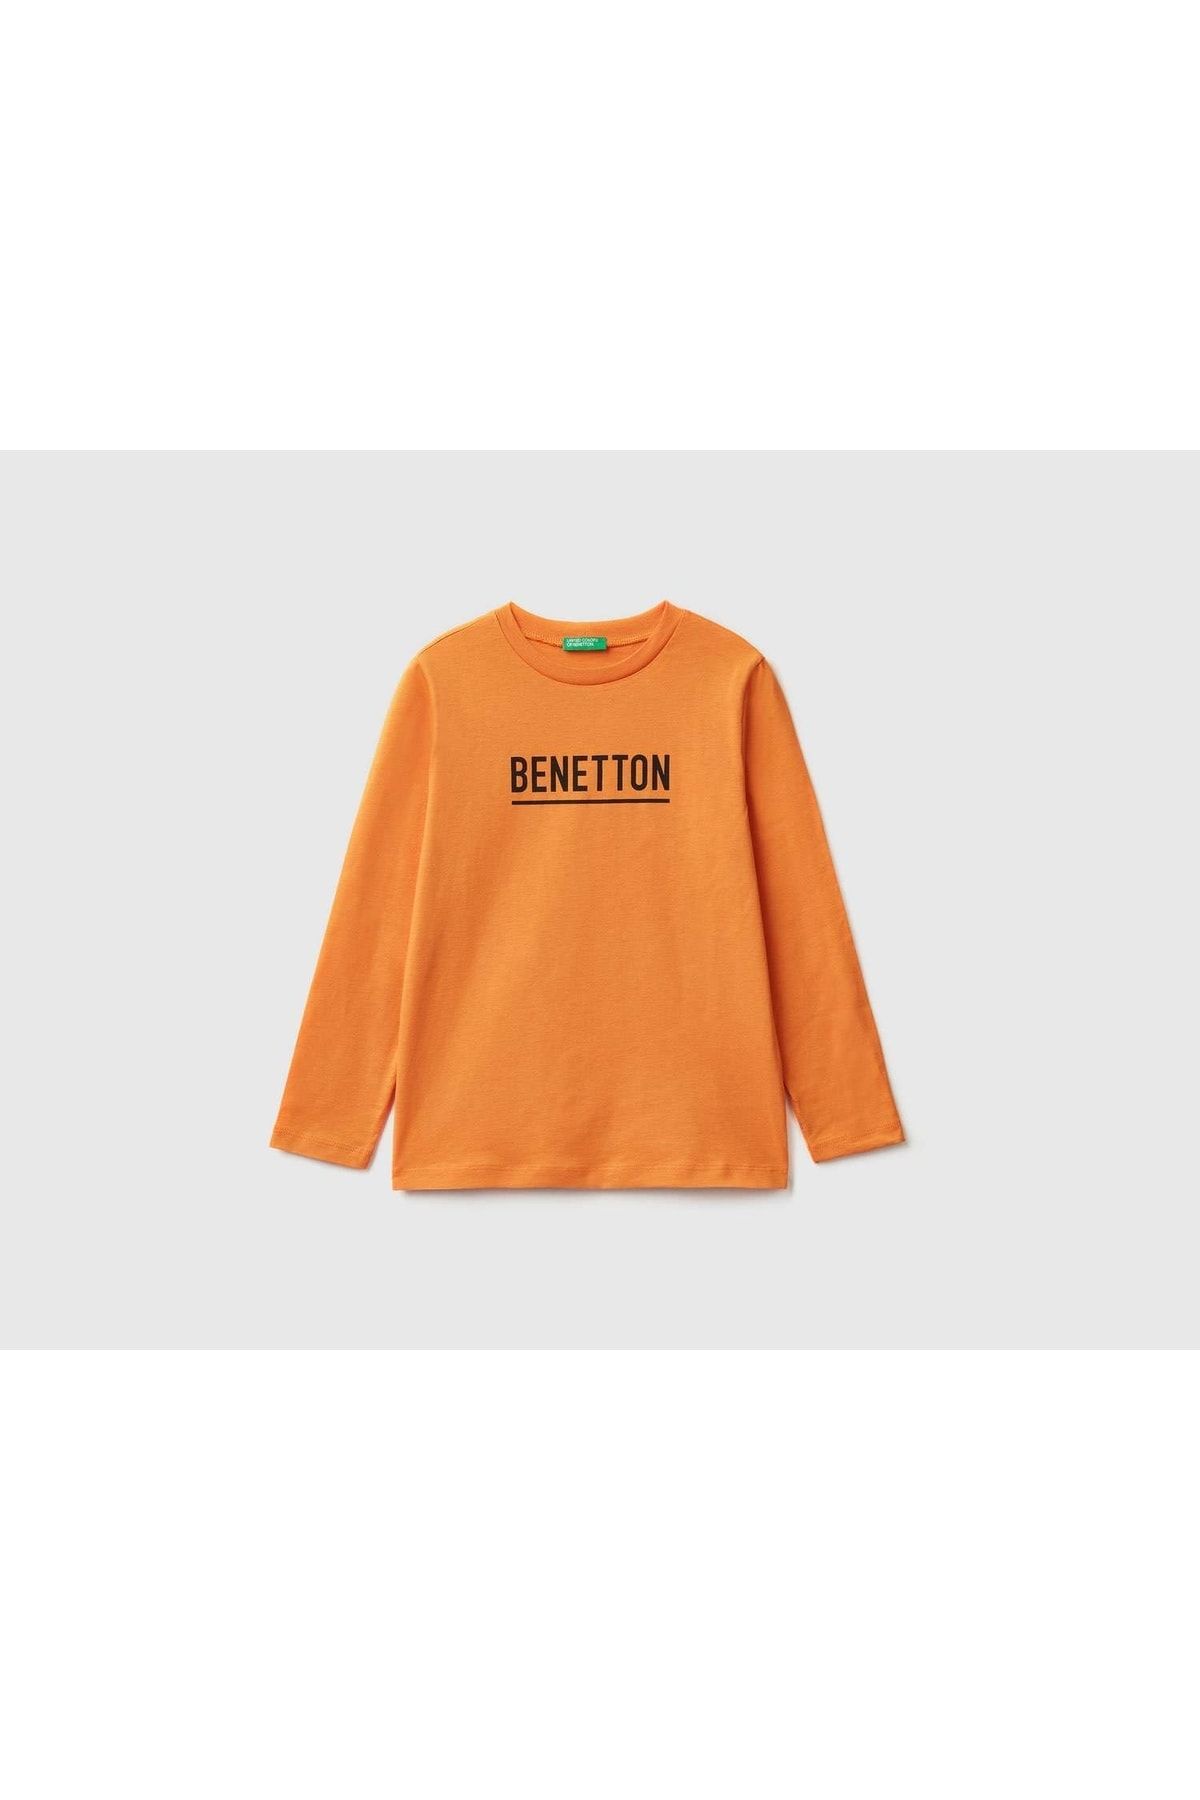 United Colors of Benetton Benetton Su Baskılı T-shirt